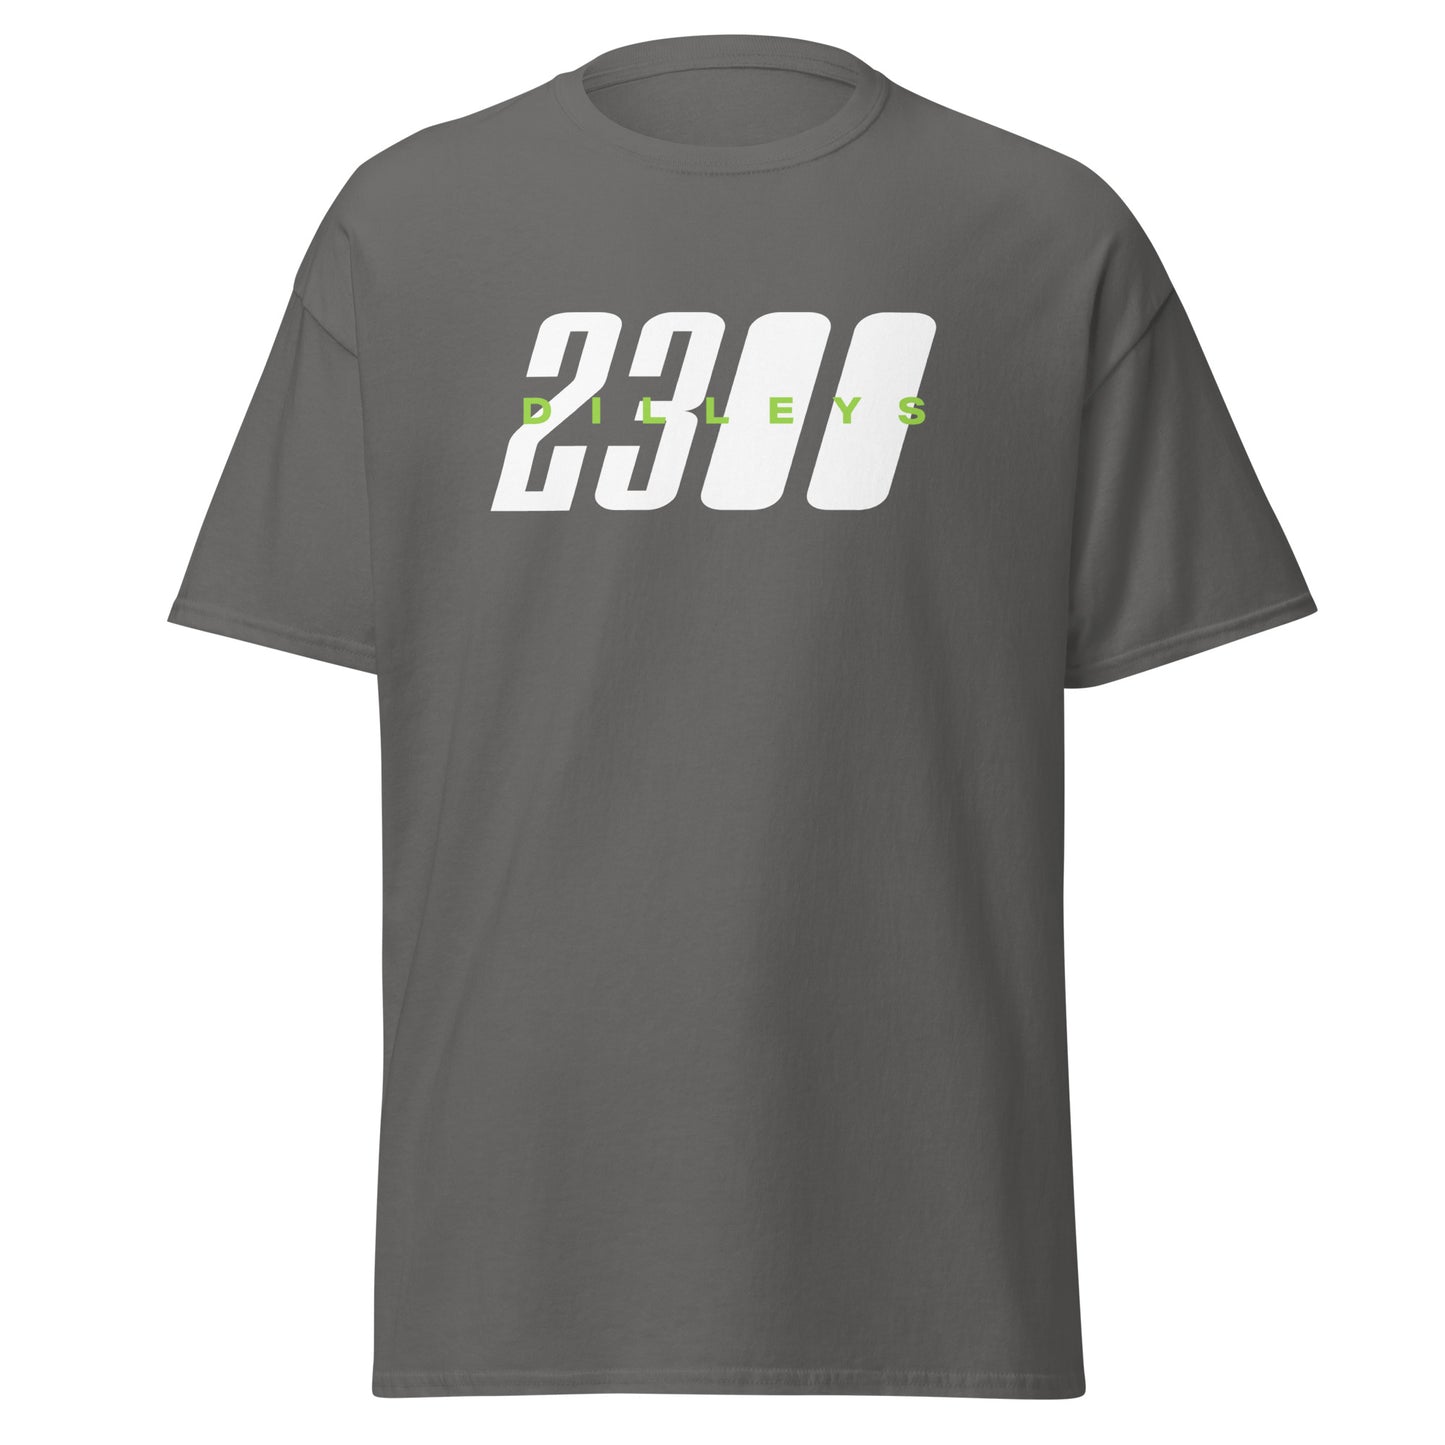 2300 Dilleys T-Shirt